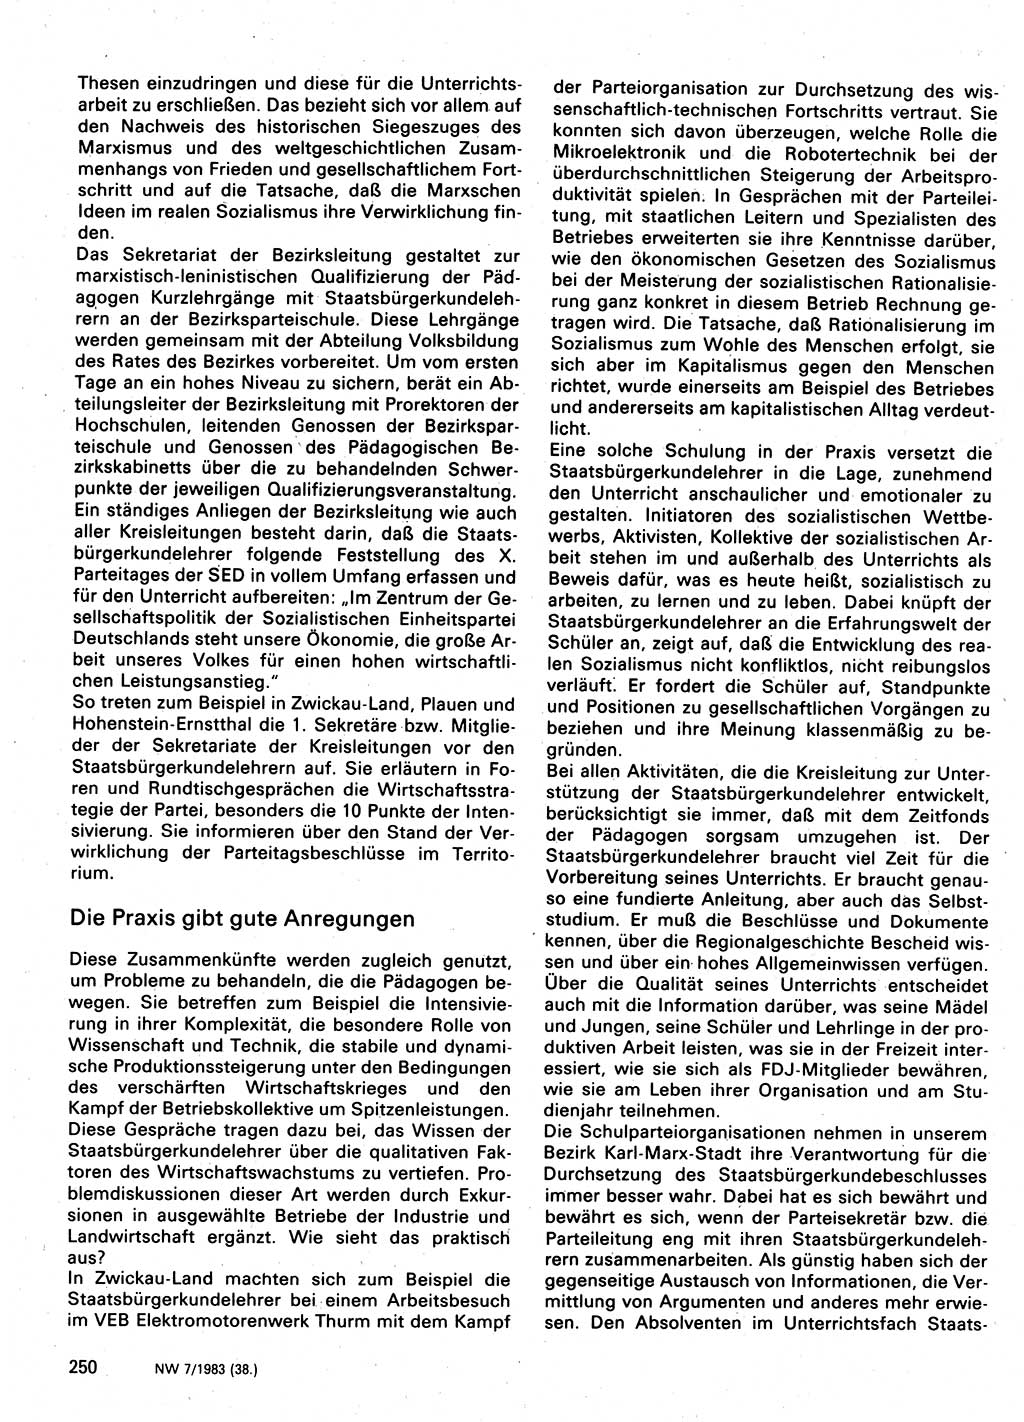 Neuer Weg (NW), Organ des Zentralkomitees (ZK) der SED (Sozialistische Einheitspartei Deutschlands) für Fragen des Parteilebens, 38. Jahrgang [Deutsche Demokratische Republik (DDR)] 1983, Seite 250 (NW ZK SED DDR 1983, S. 250)